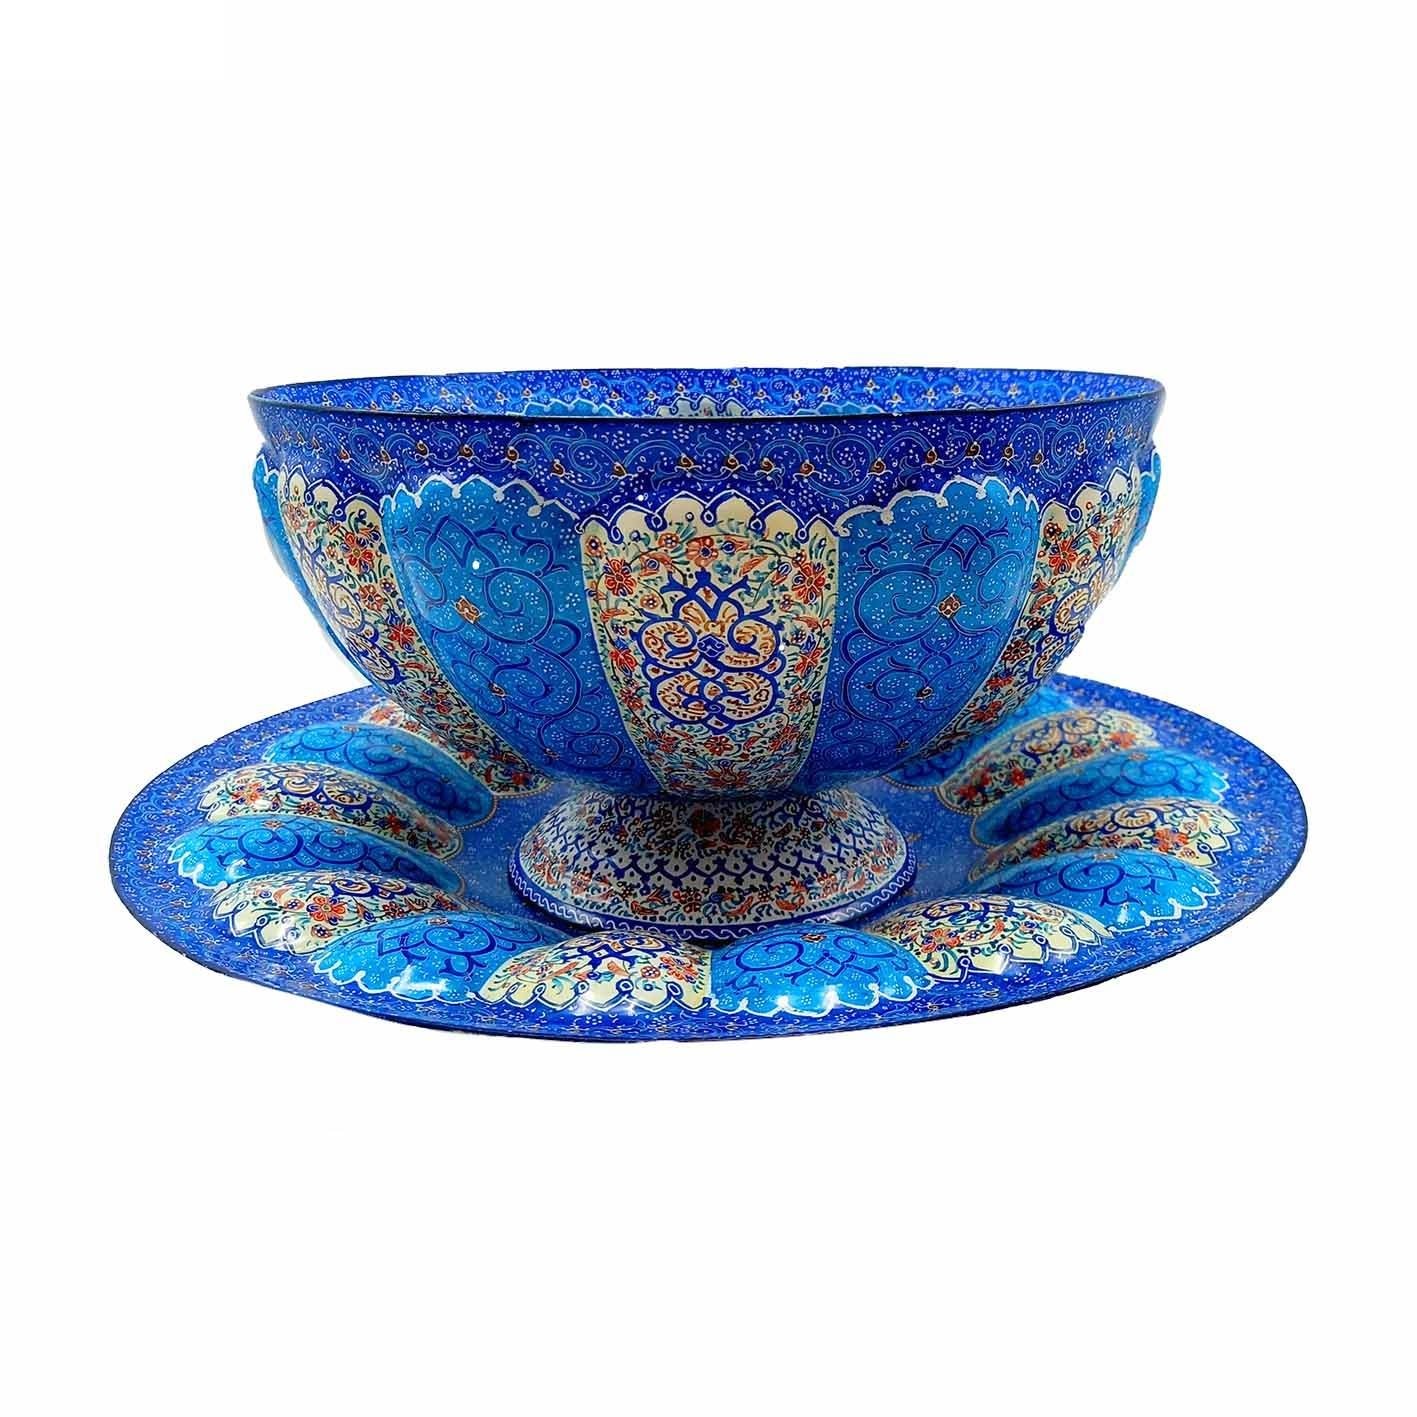 Enamel Handicraft dish and bowl Eslimi design code 488, comprar plato de esmalte, comprar plato de esmalte, comprar esmaltes, comprar esmalte azul